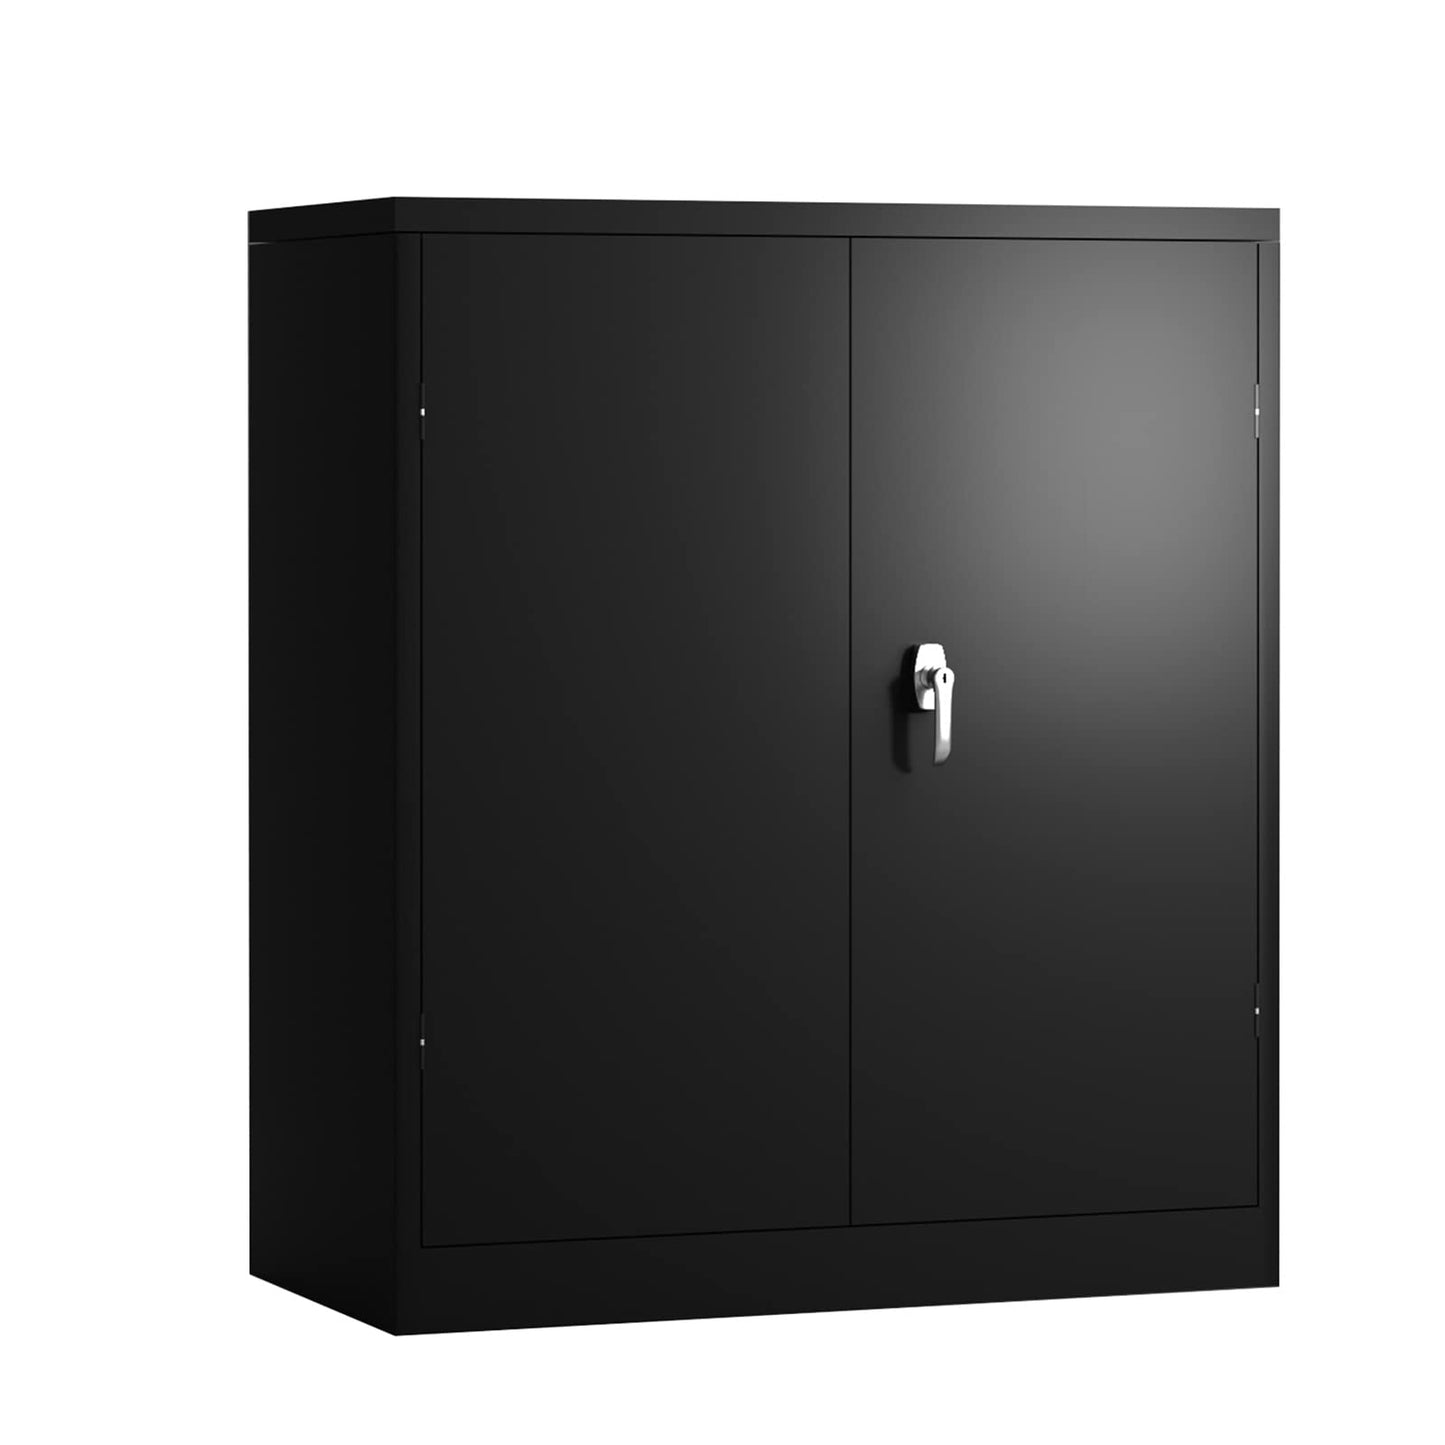 Zipzop Black Metal Storage Cabinet Lockable Steel Storage Cabinet with 2 Adjustable Shelves and 2 Door, Metal Utility Office Locker, 42”H×36”W×18”D